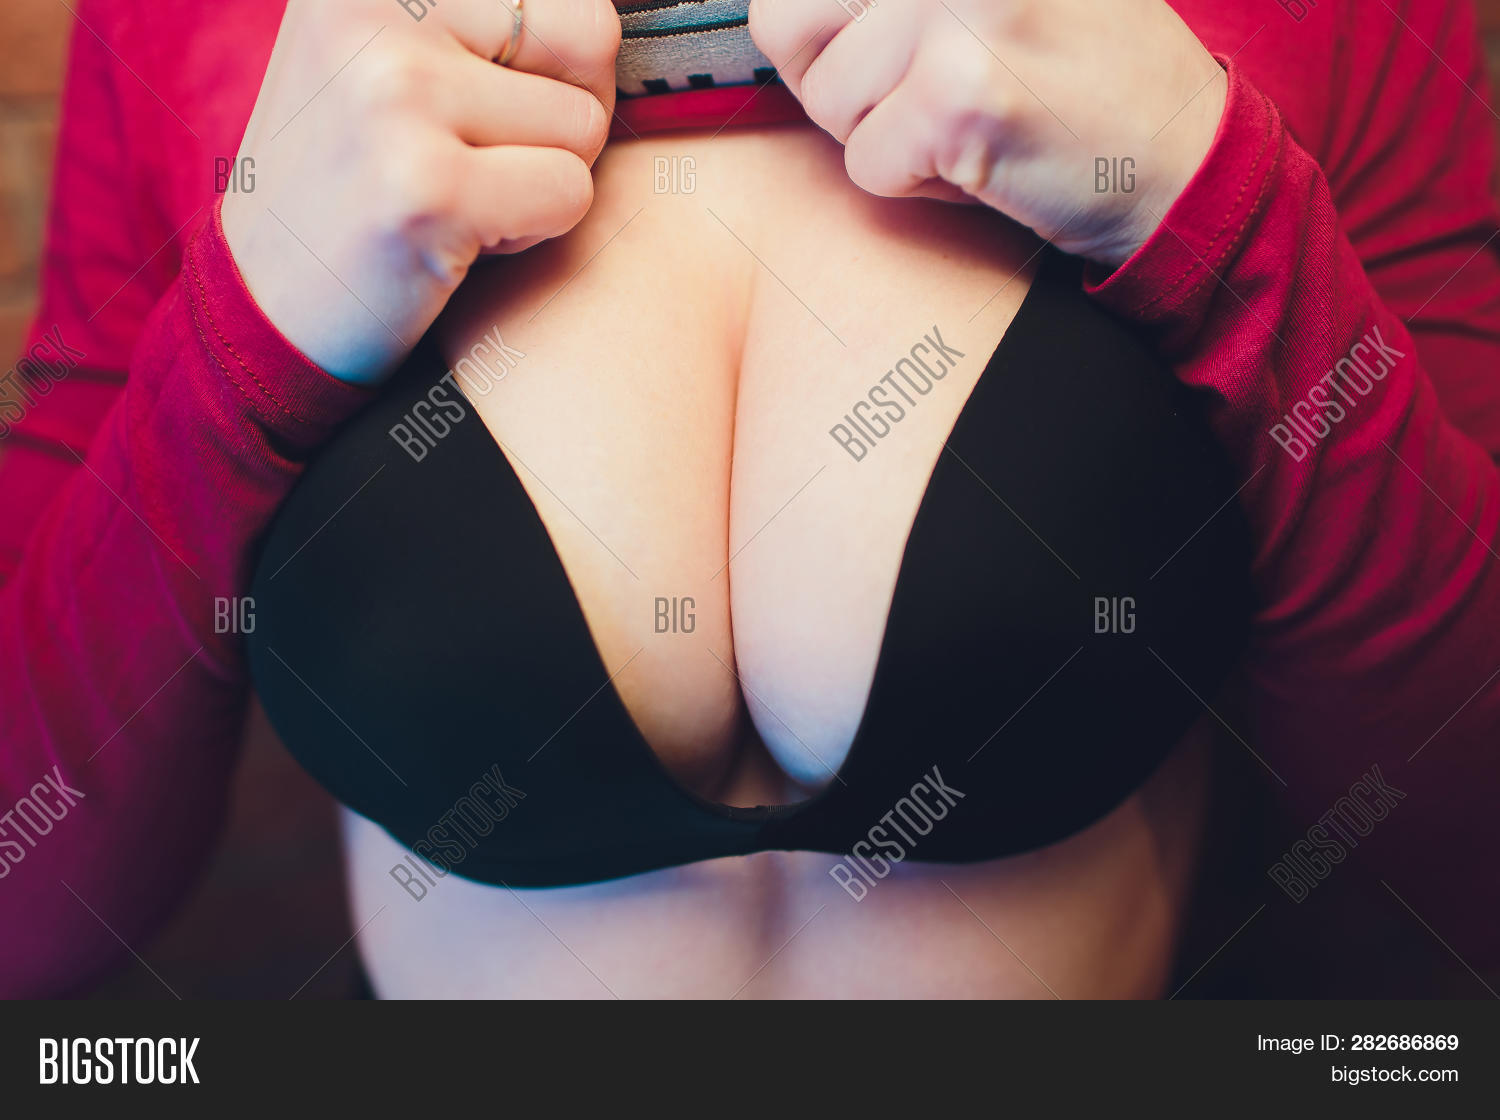 destiny graber share black sexy big tits photos